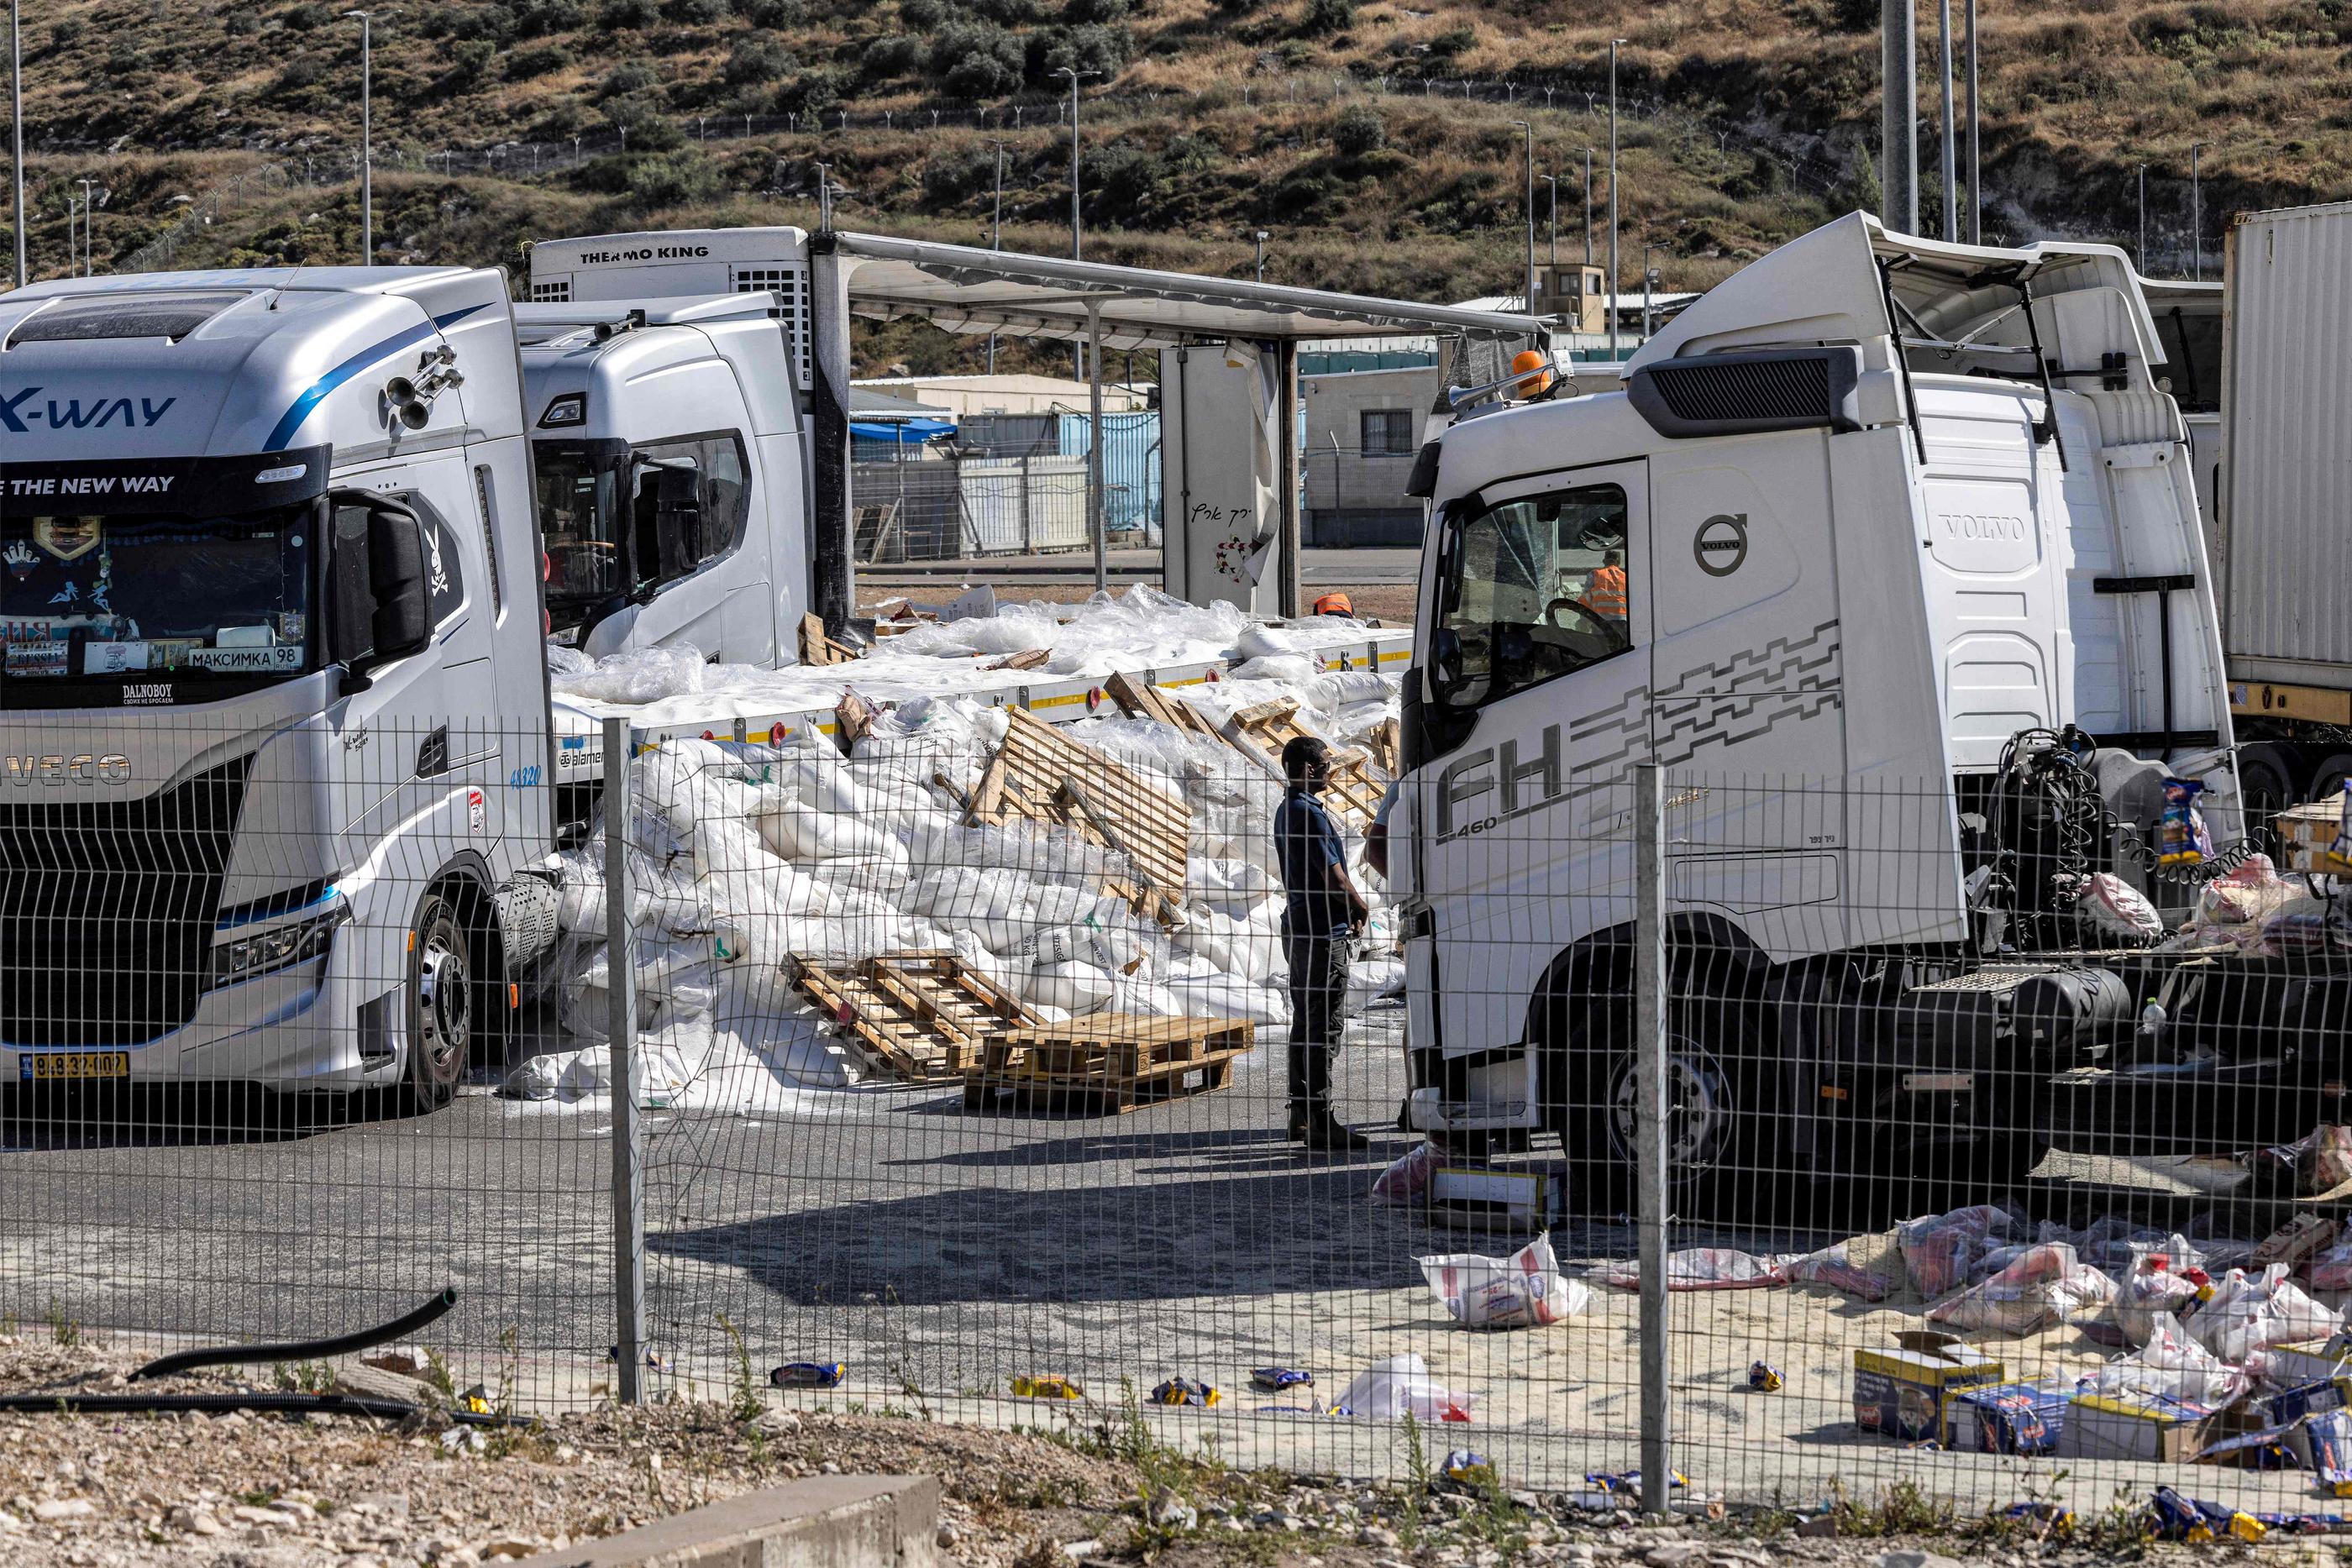 Le 13 mai, des dizaines de personnes, identifiées par des médias israéliens comme membres d’un collectif radical opposé à l’aide à Gaza, avaient bloqué des camions et saccagé leur contenu. AFP / Oren ZIV.